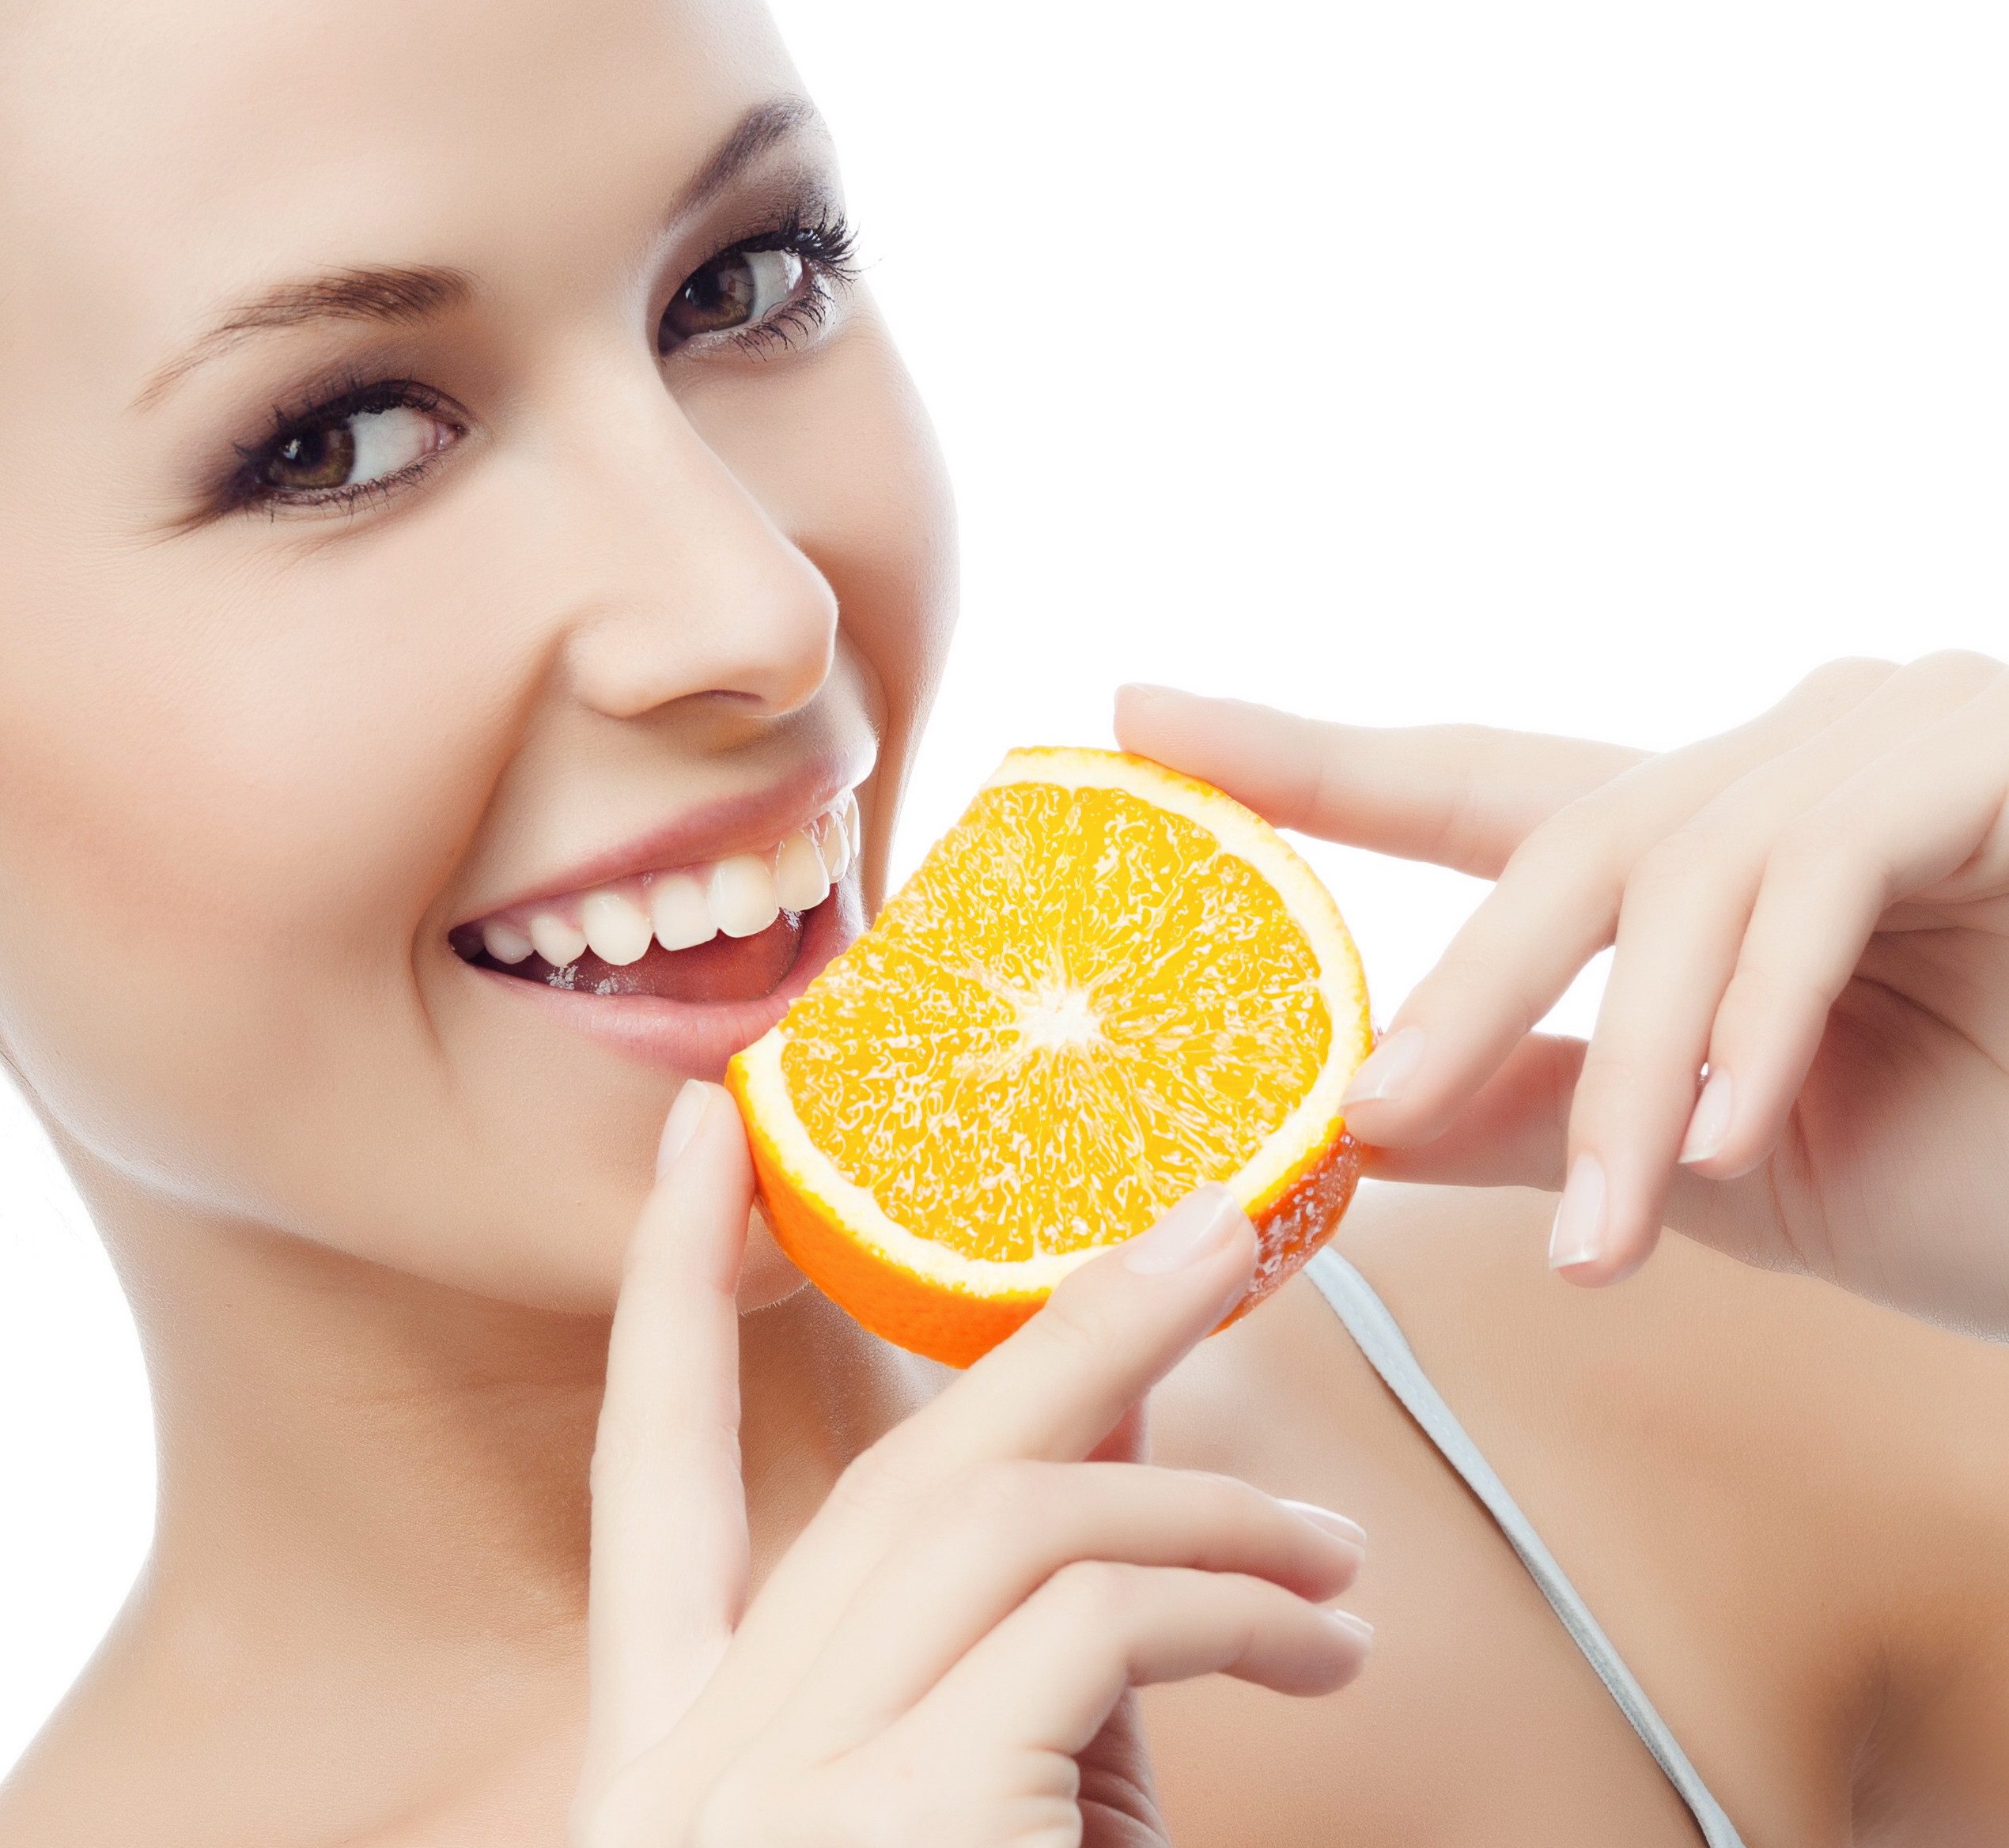 23 факта, которые вы не знали об апельсинах